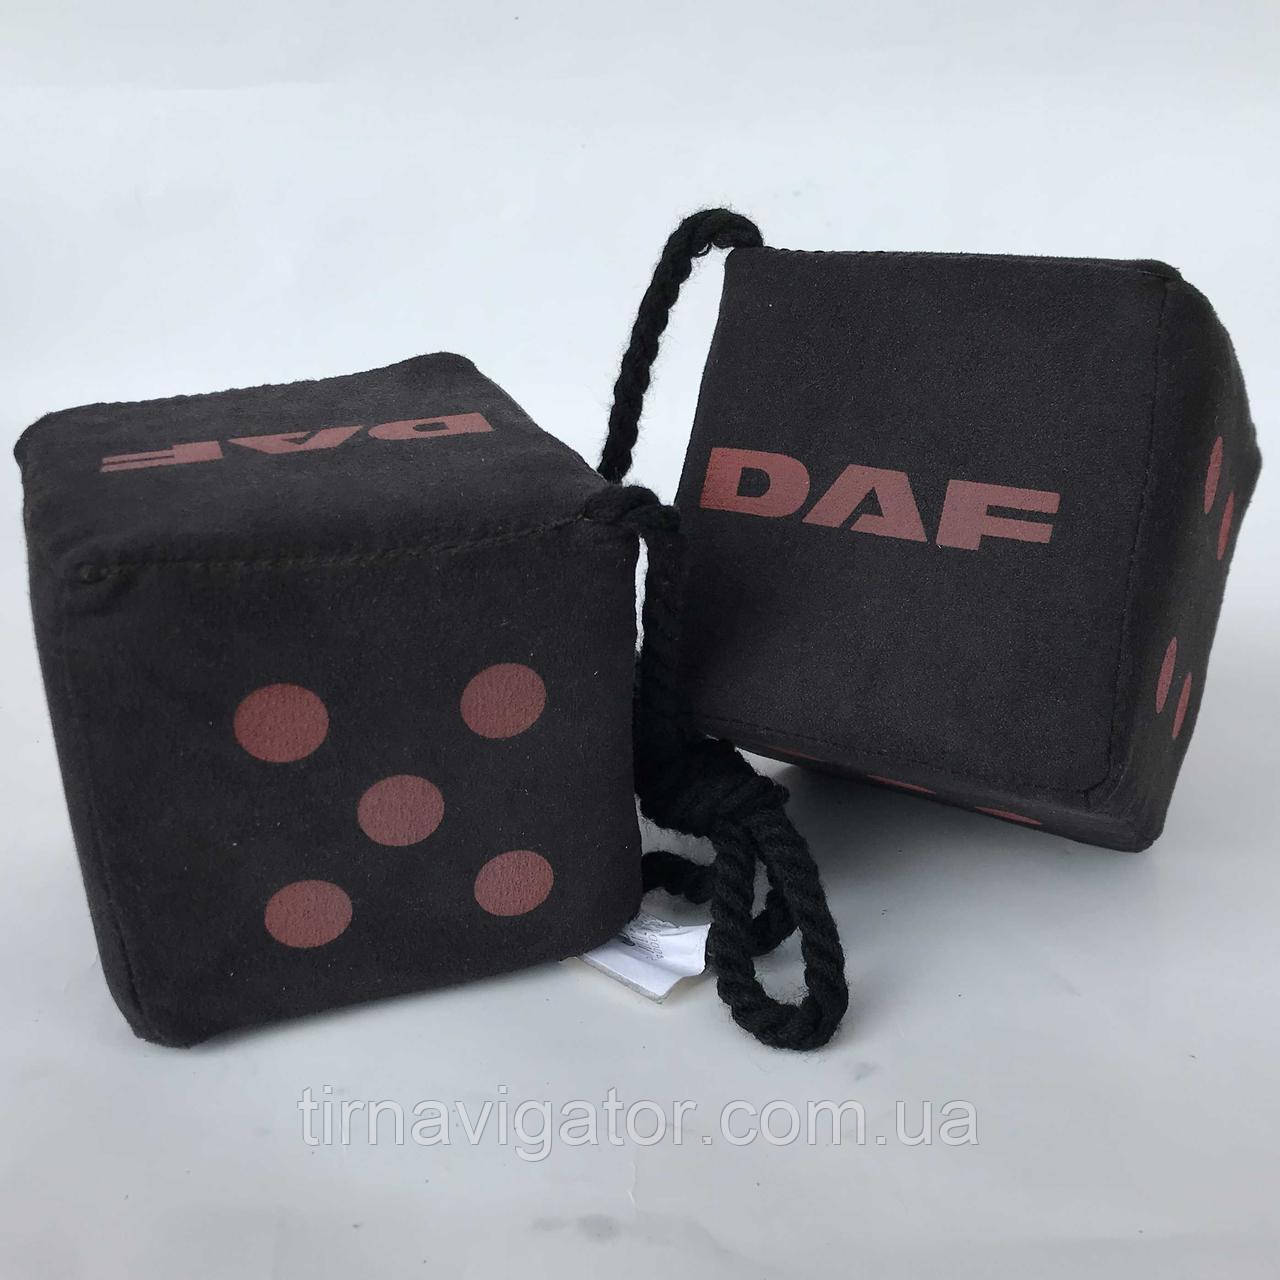 Кубики декор DAF 10*10 чорні (2 шт.)